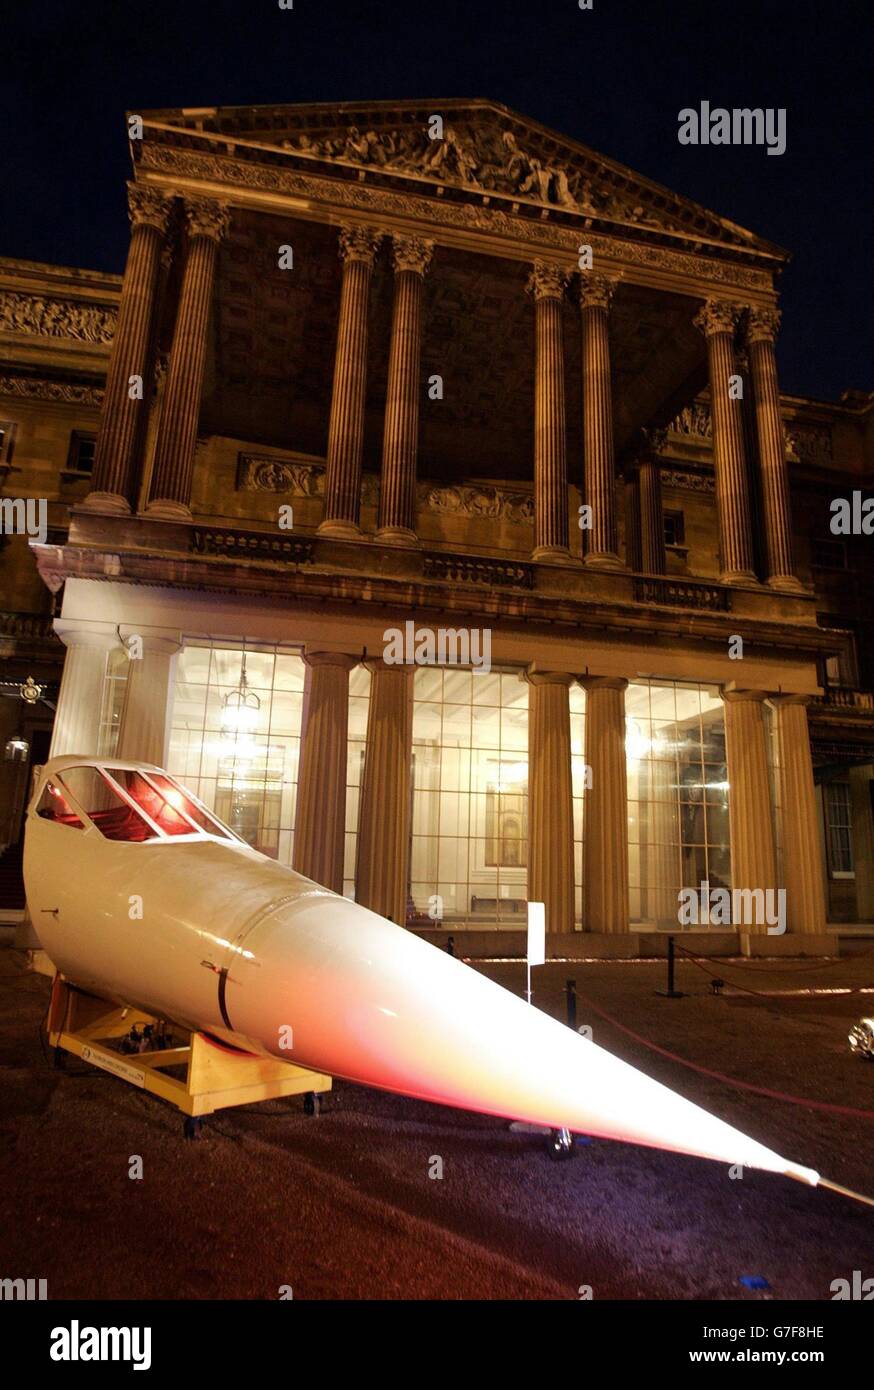 Un cono nasale da un jet supersonico Concorde nel cortile di Buckingham Palace, Londra. L'articolo sarà incluso in una vetrina presso il palazzo di iconici disegni britannici come parte di una serie di giornate a tema ospitate dalla regina Elisabetta britannica e dal duca di Edimburgo per segnare il contributo dato dall'industria del design britannico. Foto Stock